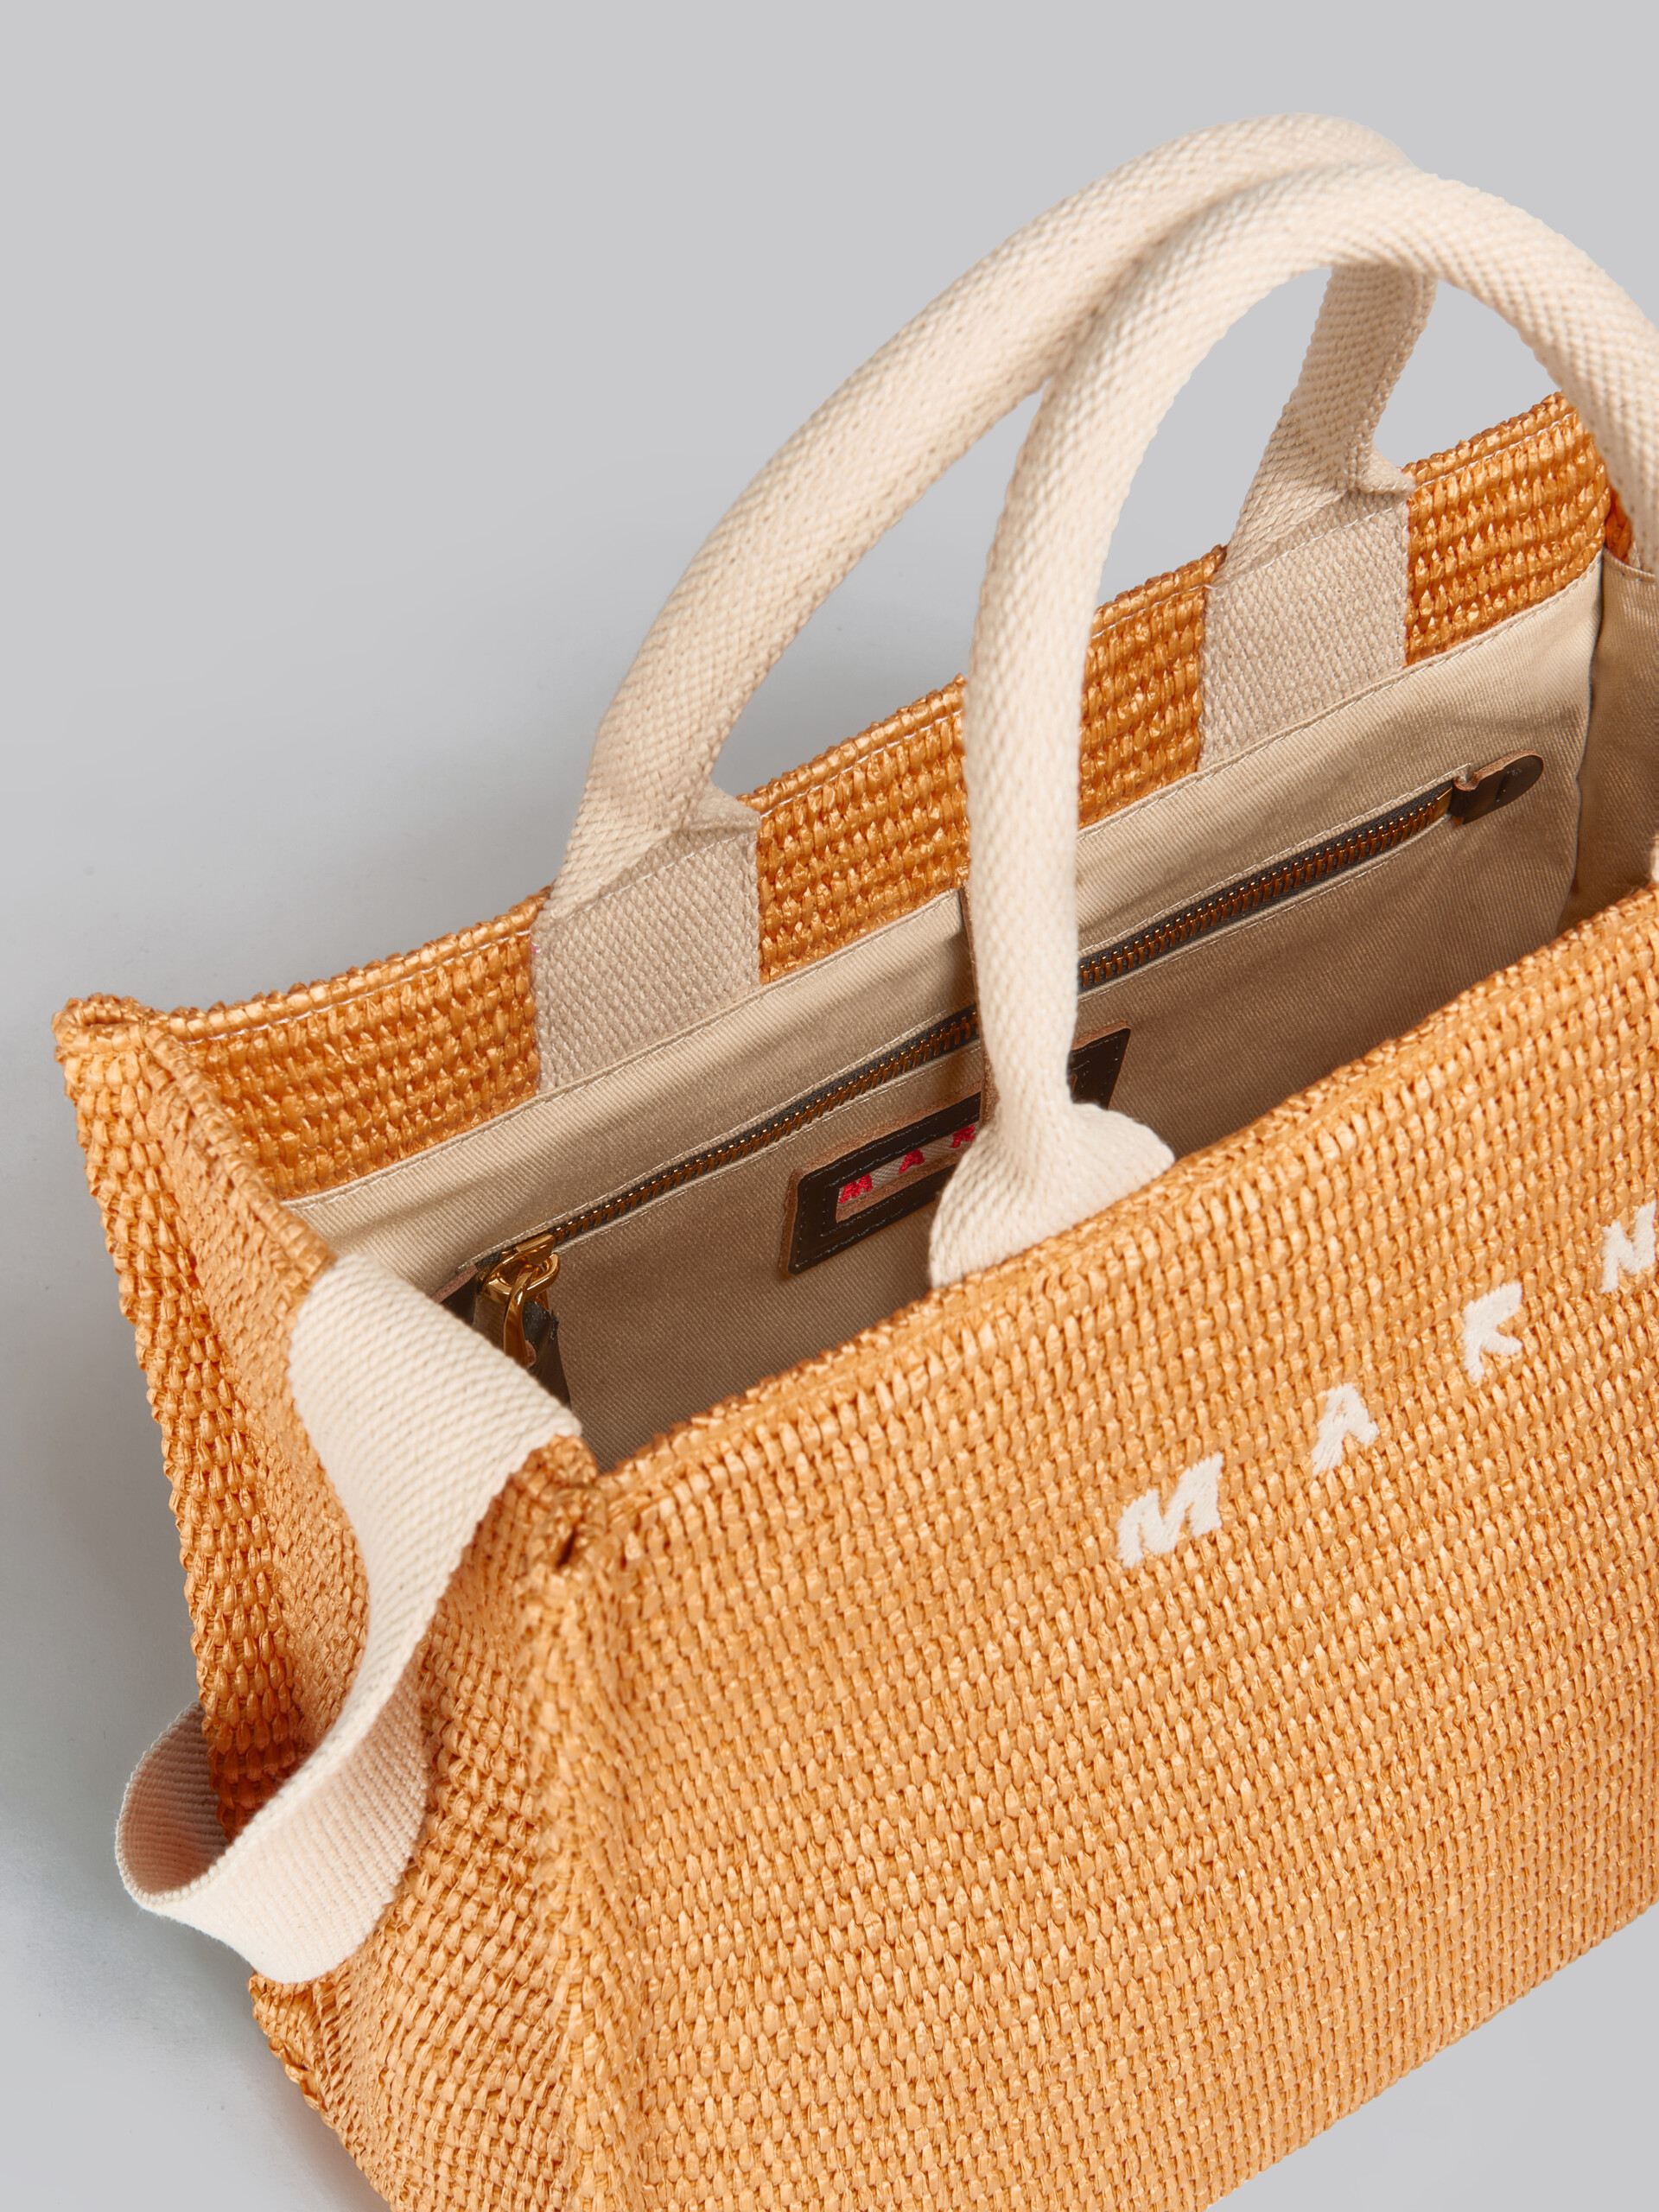 Tote Bag Piccola in tessuto effetto rafia lilla - Borse shopping - Image 4